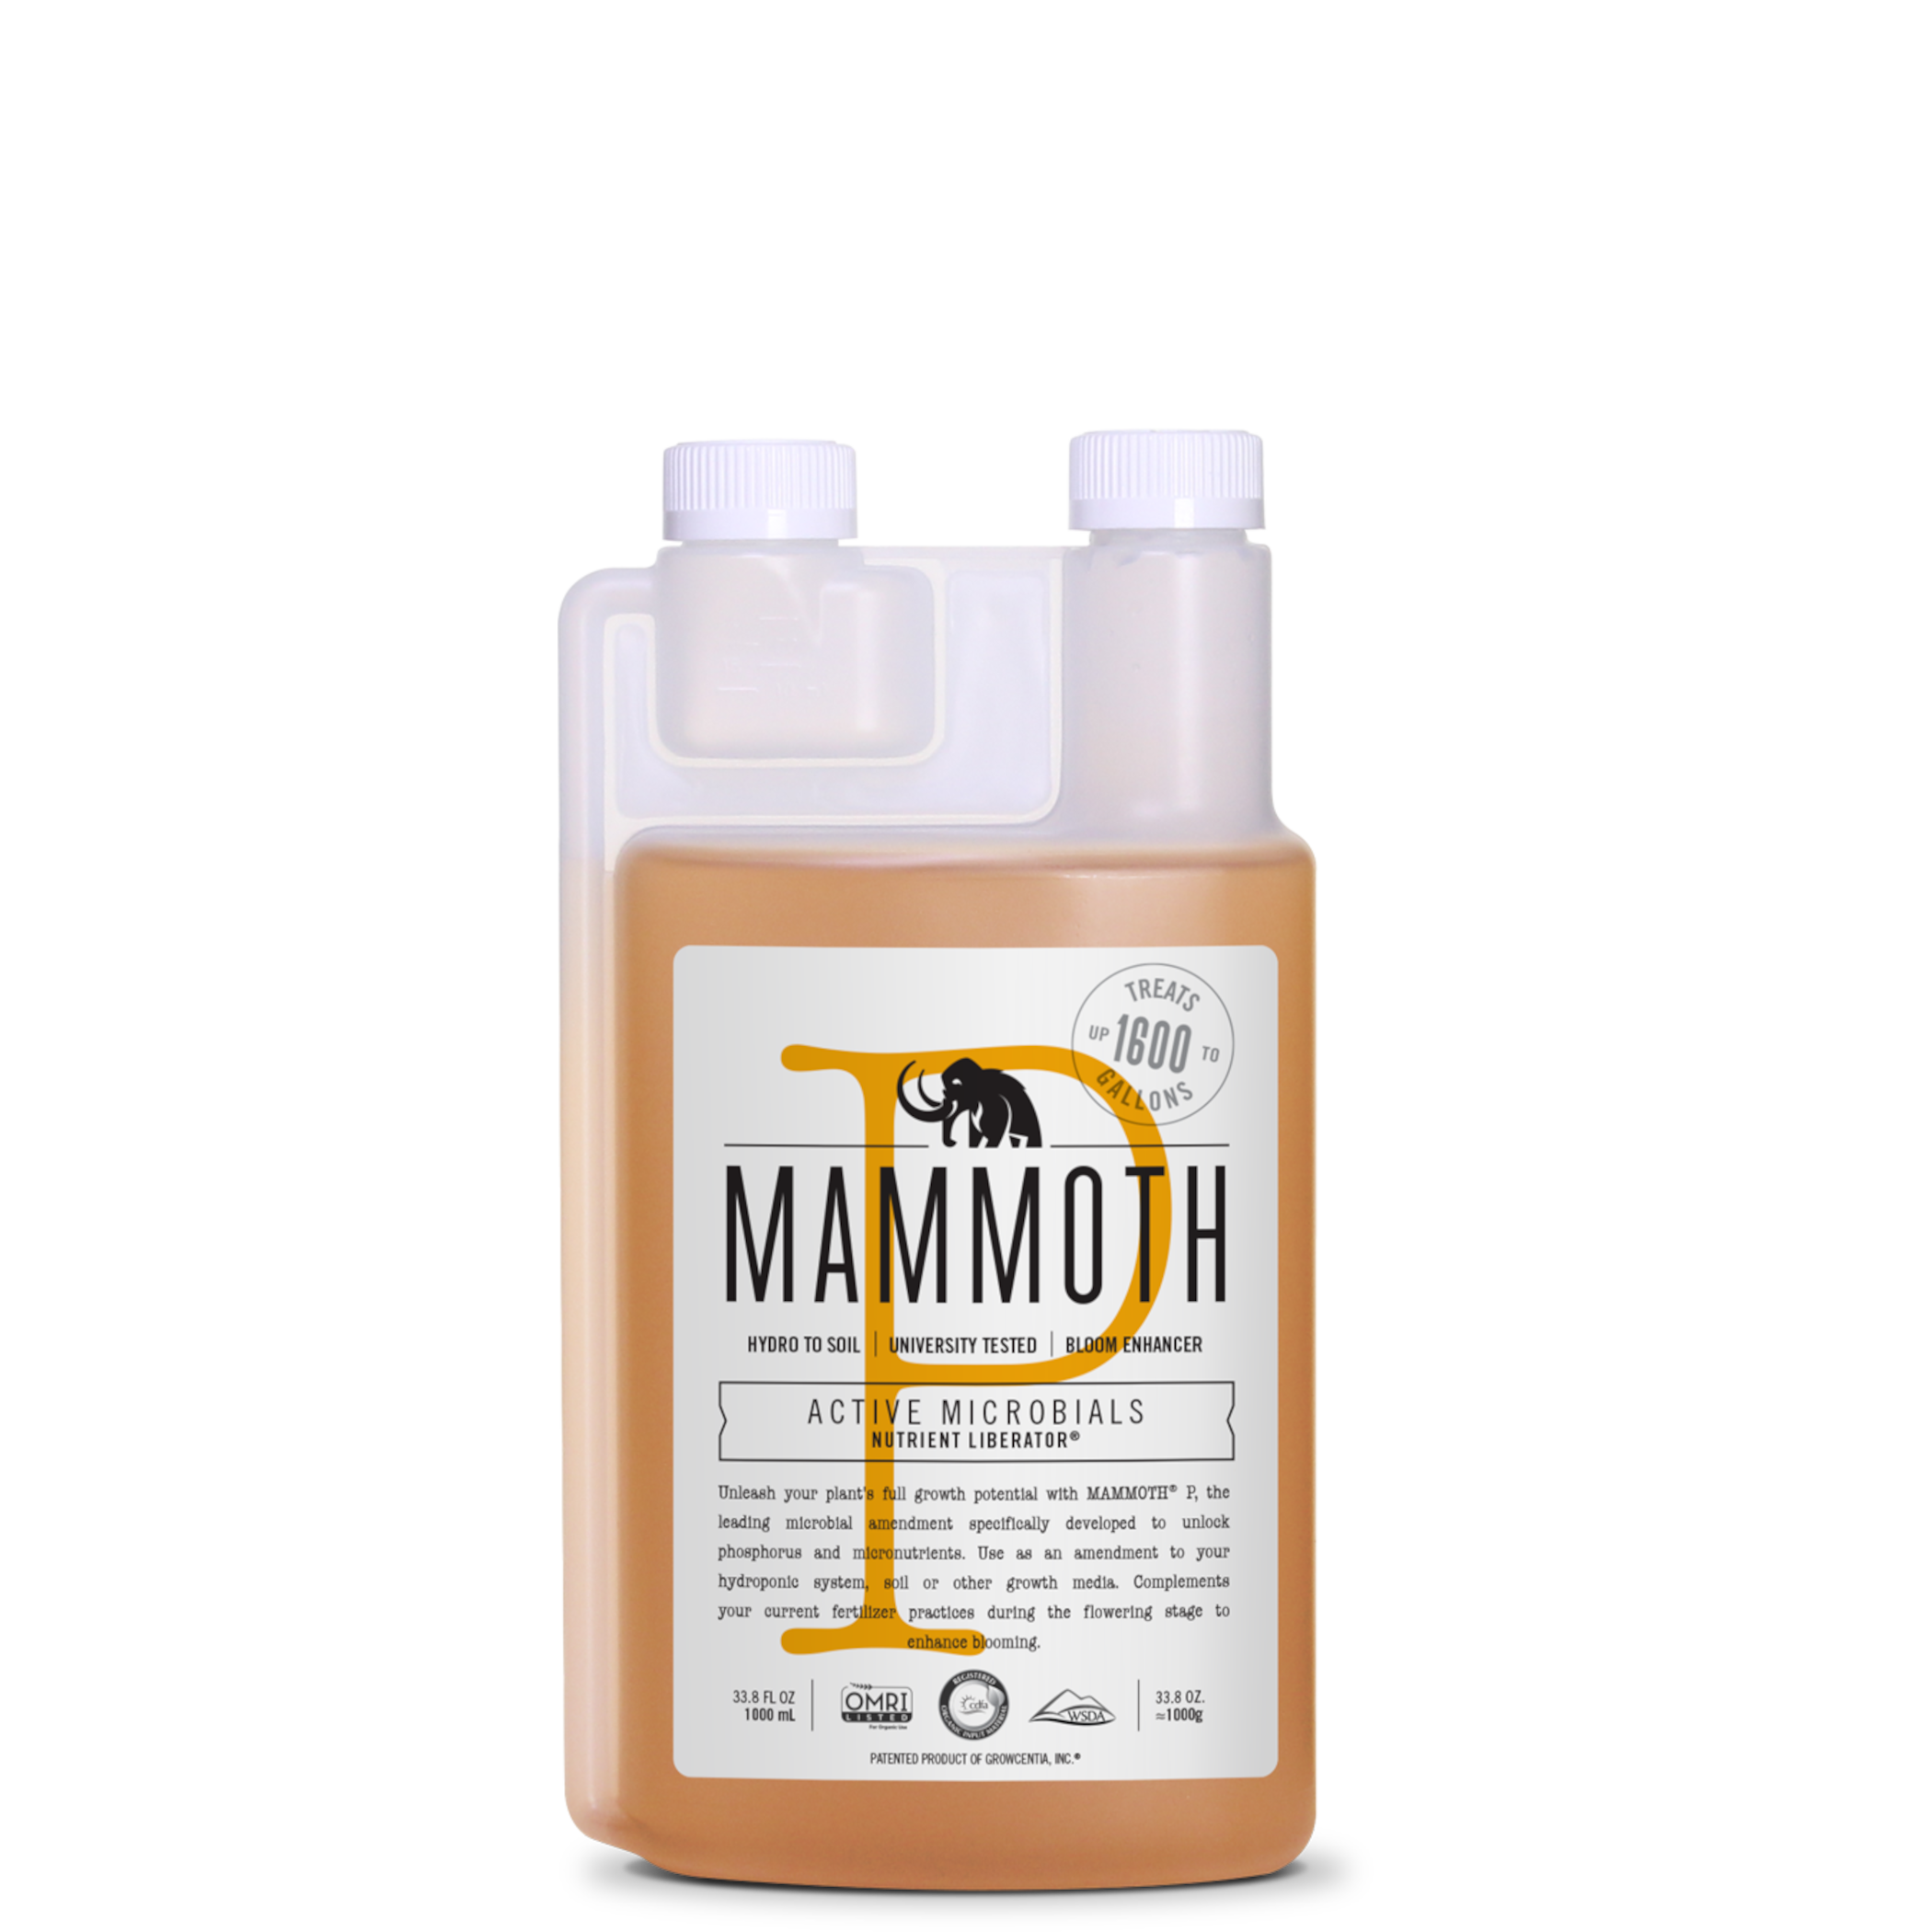 Bottle of Mammoth P, product Image. Enhance Category Image